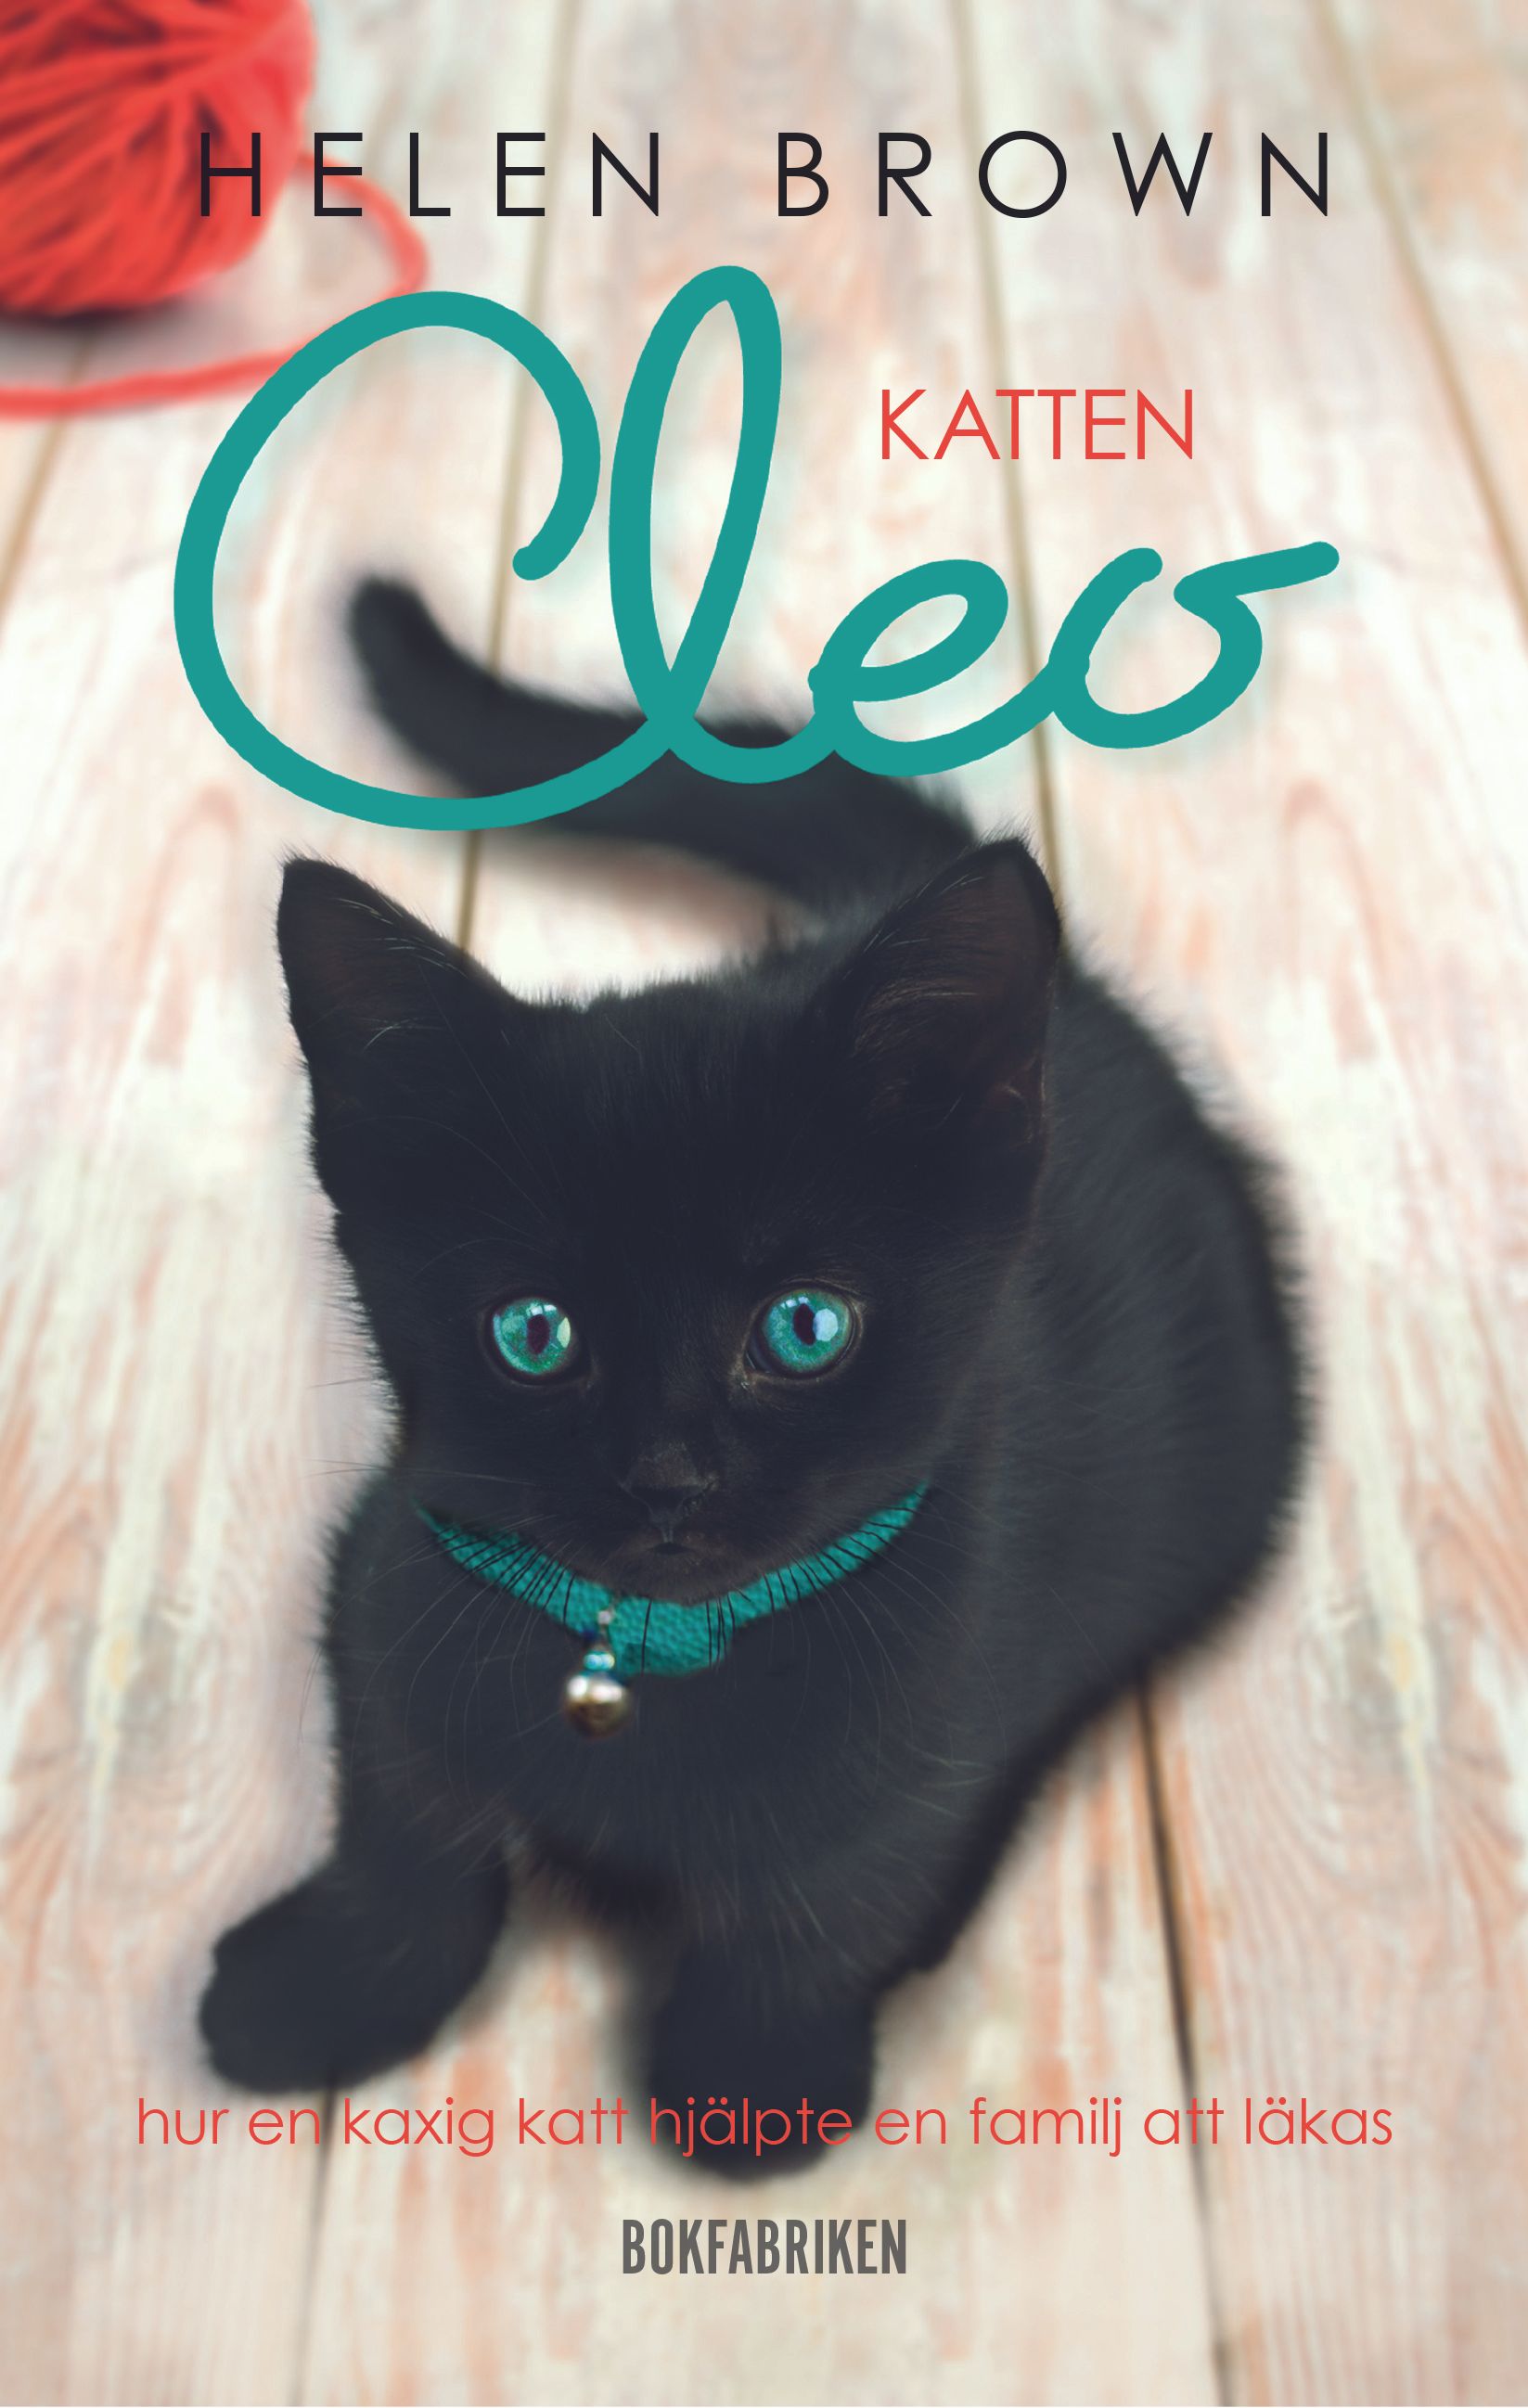 Katten Cleo - Hur en kaxig katt hjälpte en familj att läkas, eBook by Helen Brown